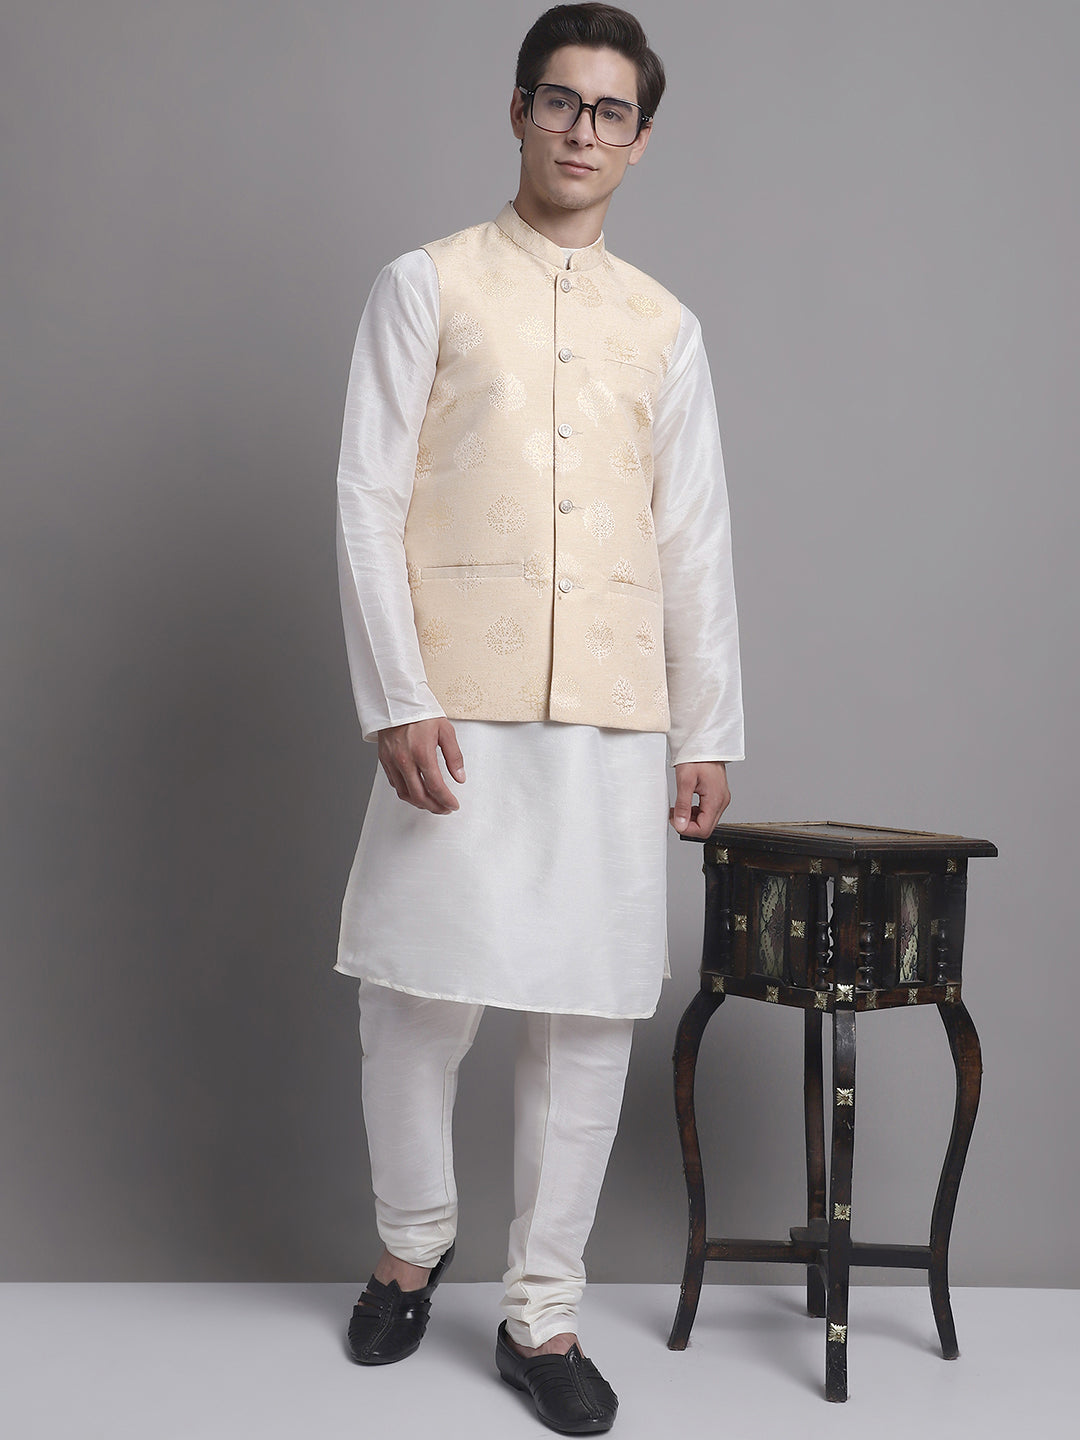 Men's Cream and Golden Printed Nehru Jacket